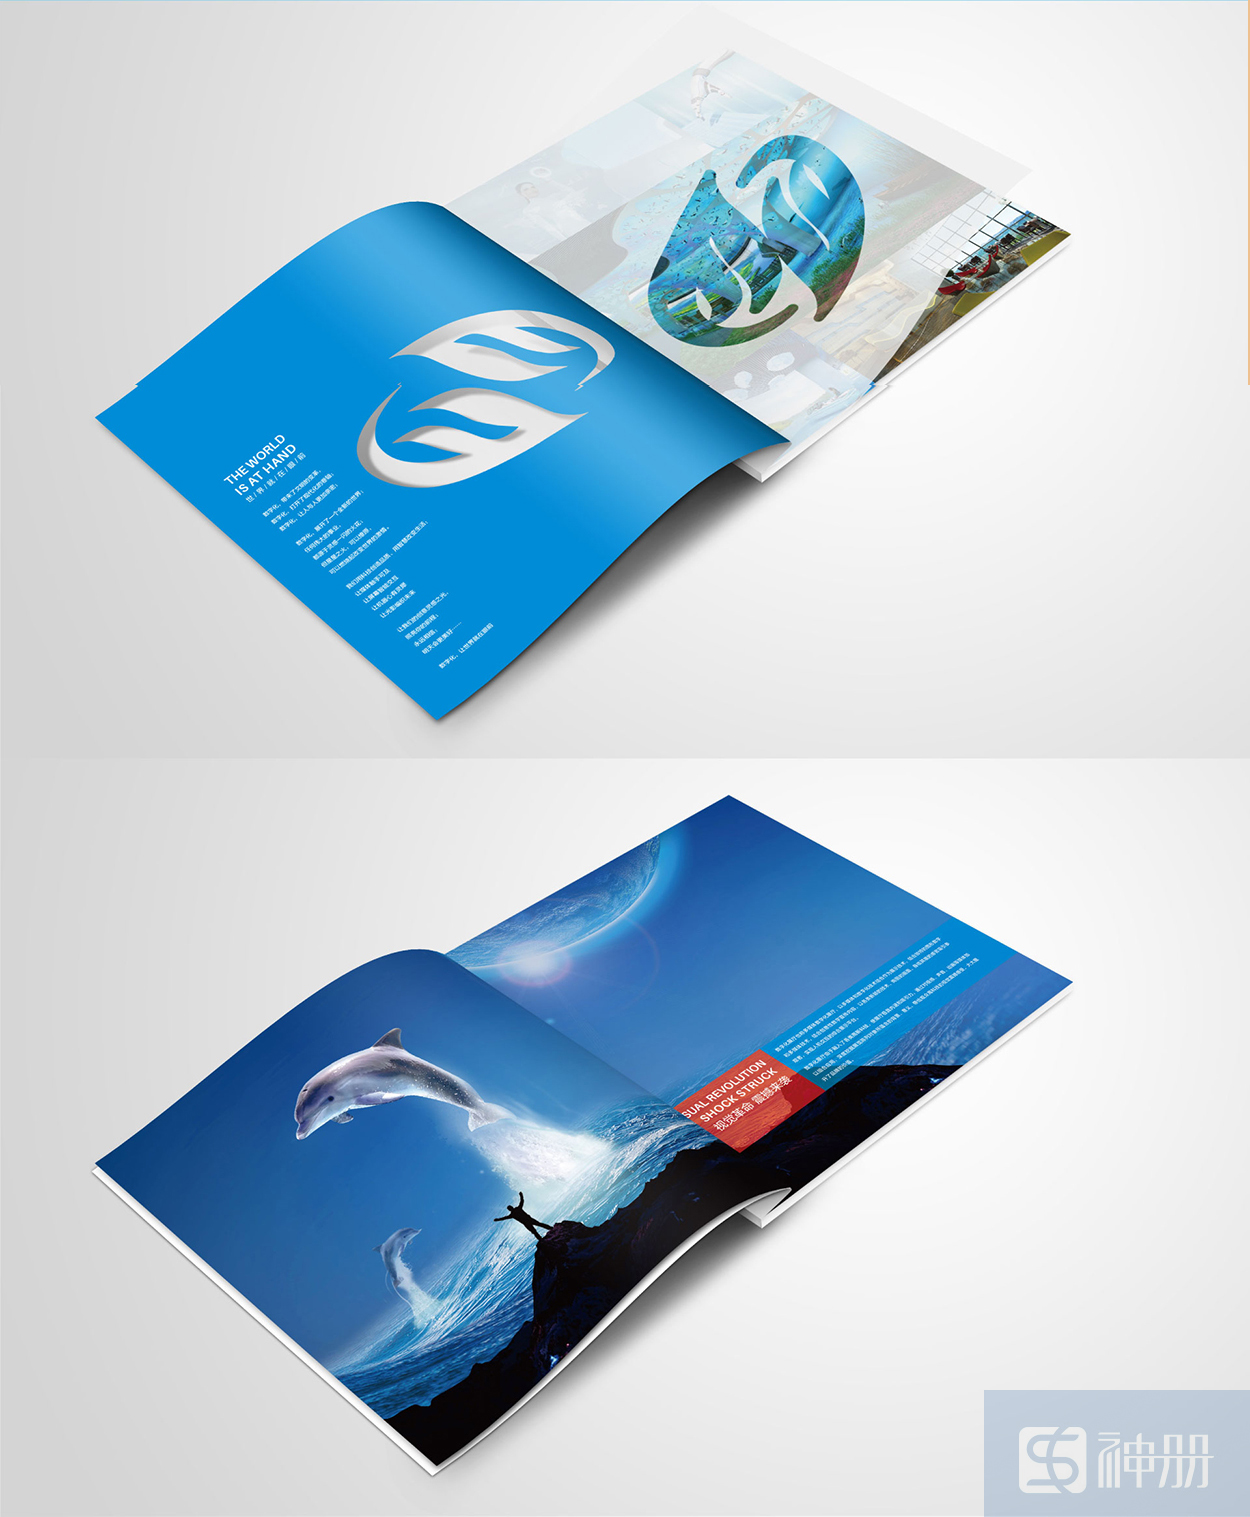 深圳led画册设计案例分享-神册设计公司